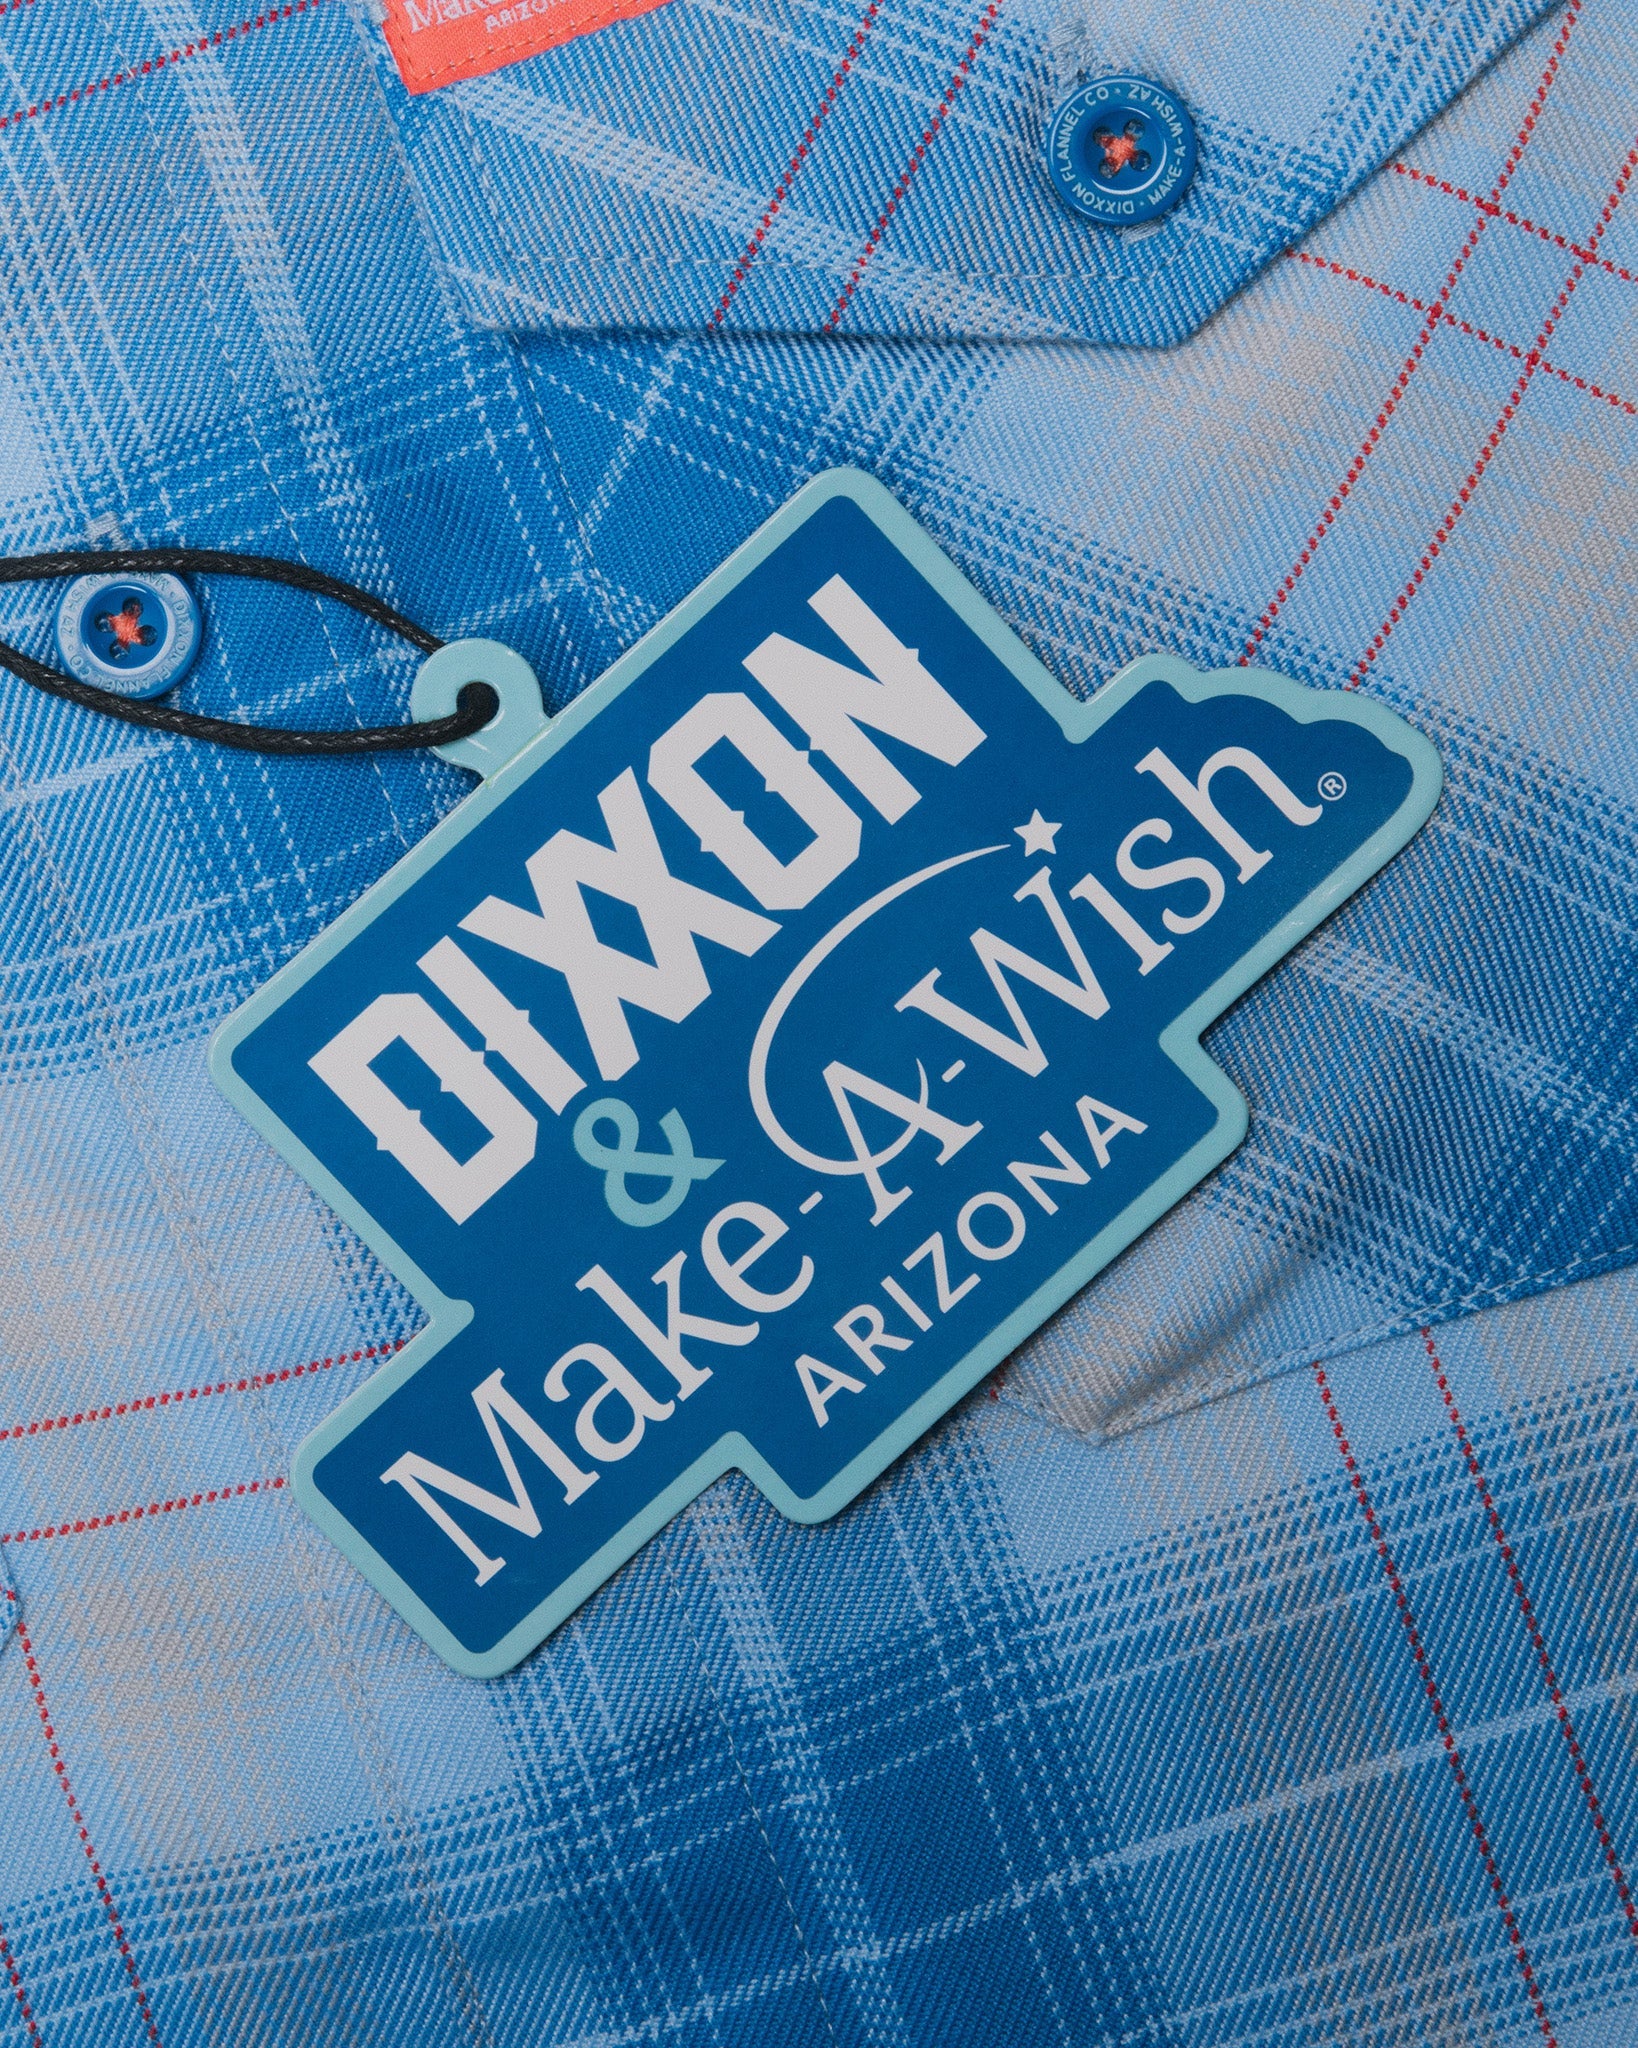 Make-A-Wish Flannel | Dixxon Flannel Co. 